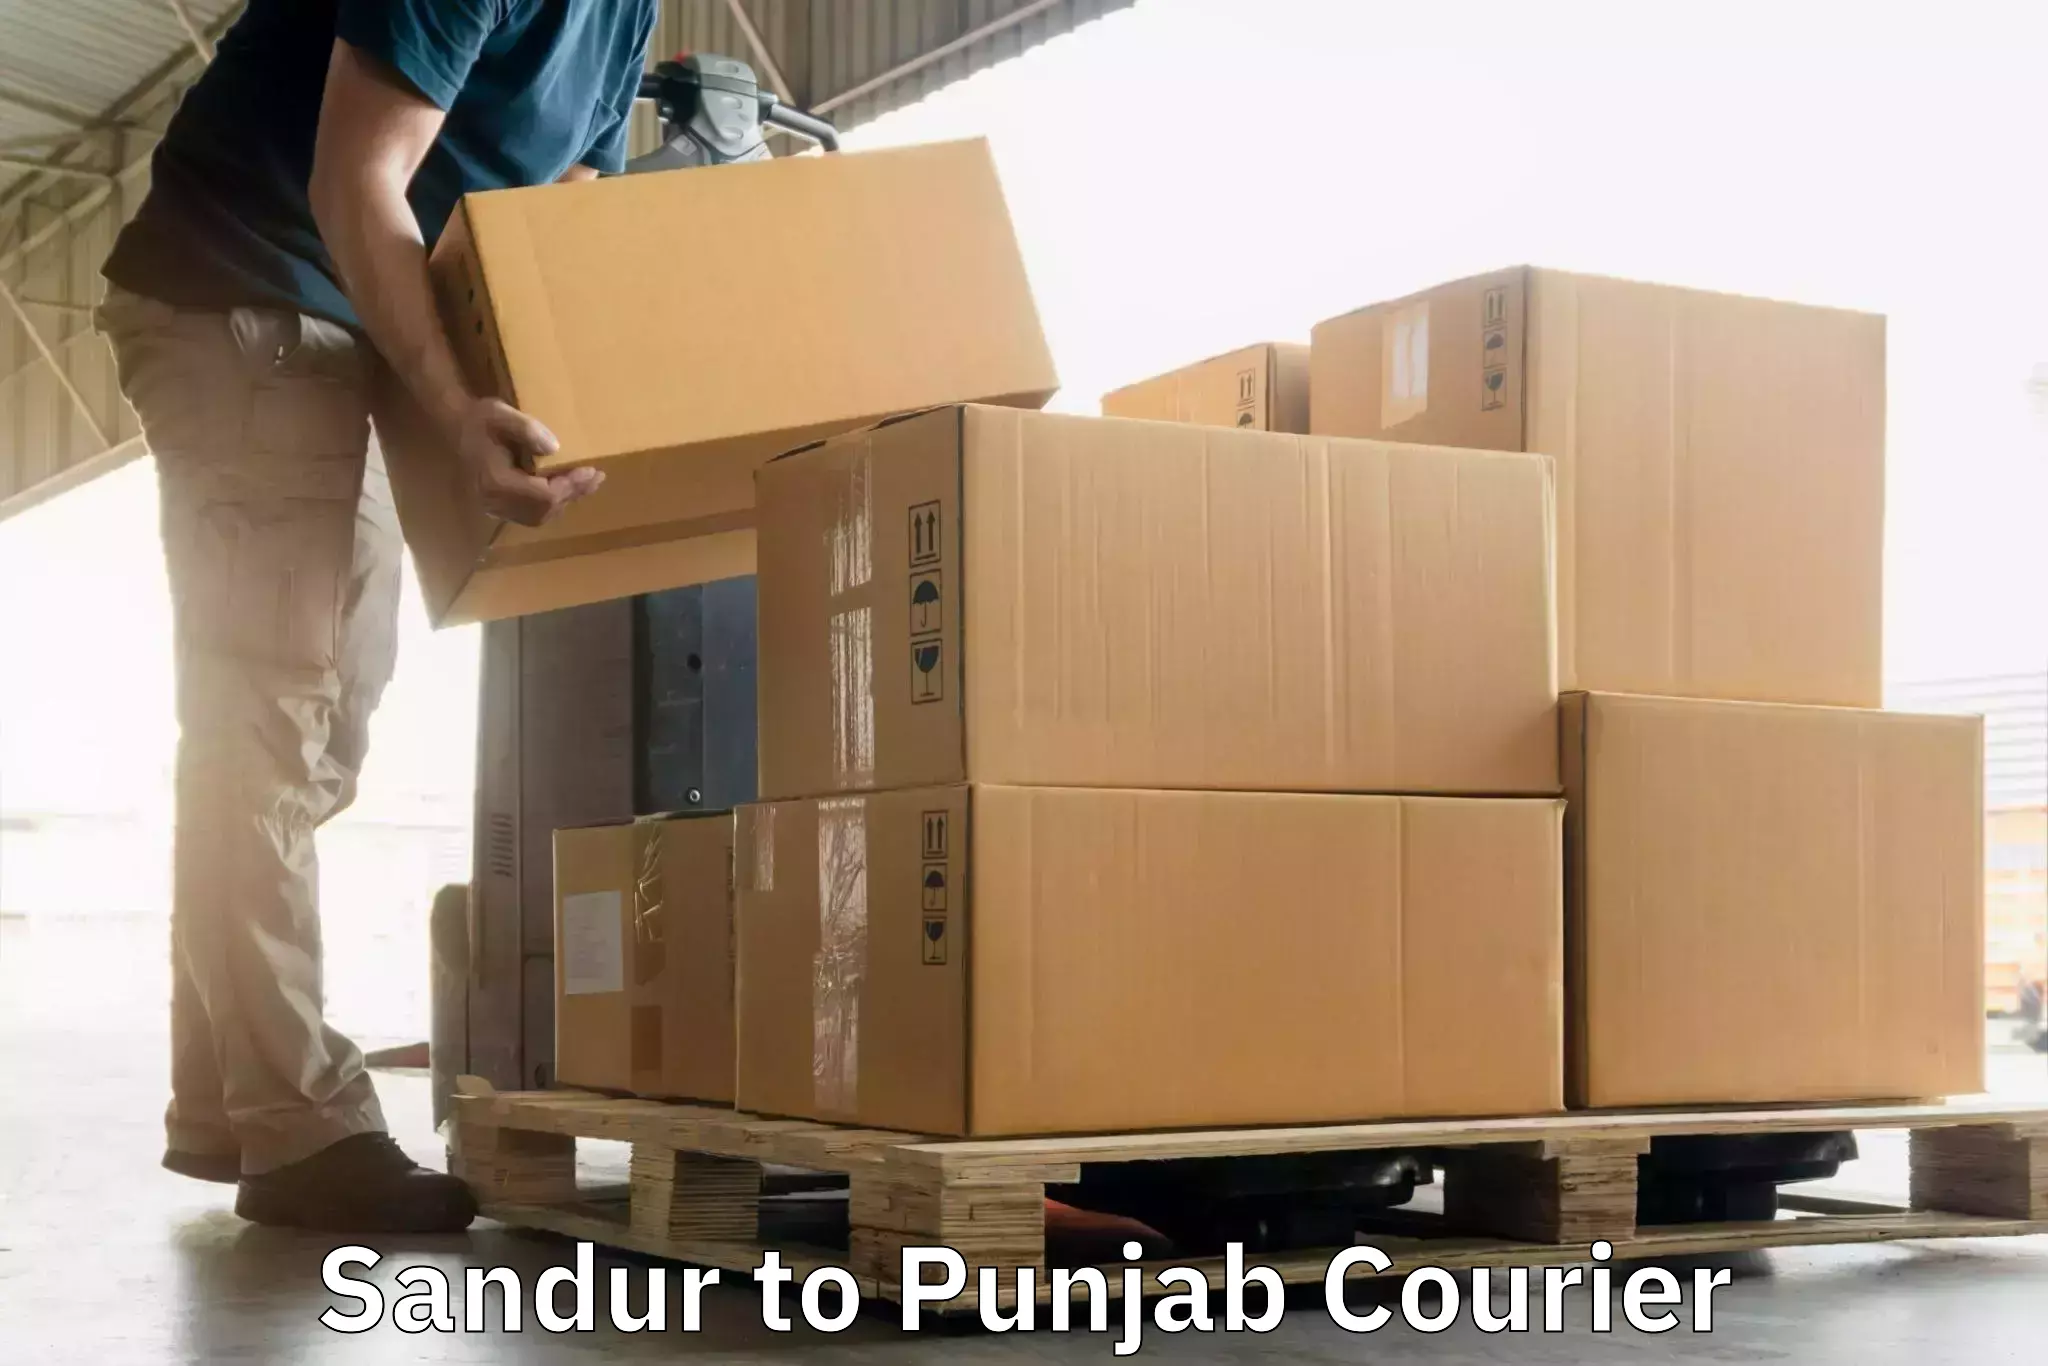 Door-to-door shipping Sandur to Punjab